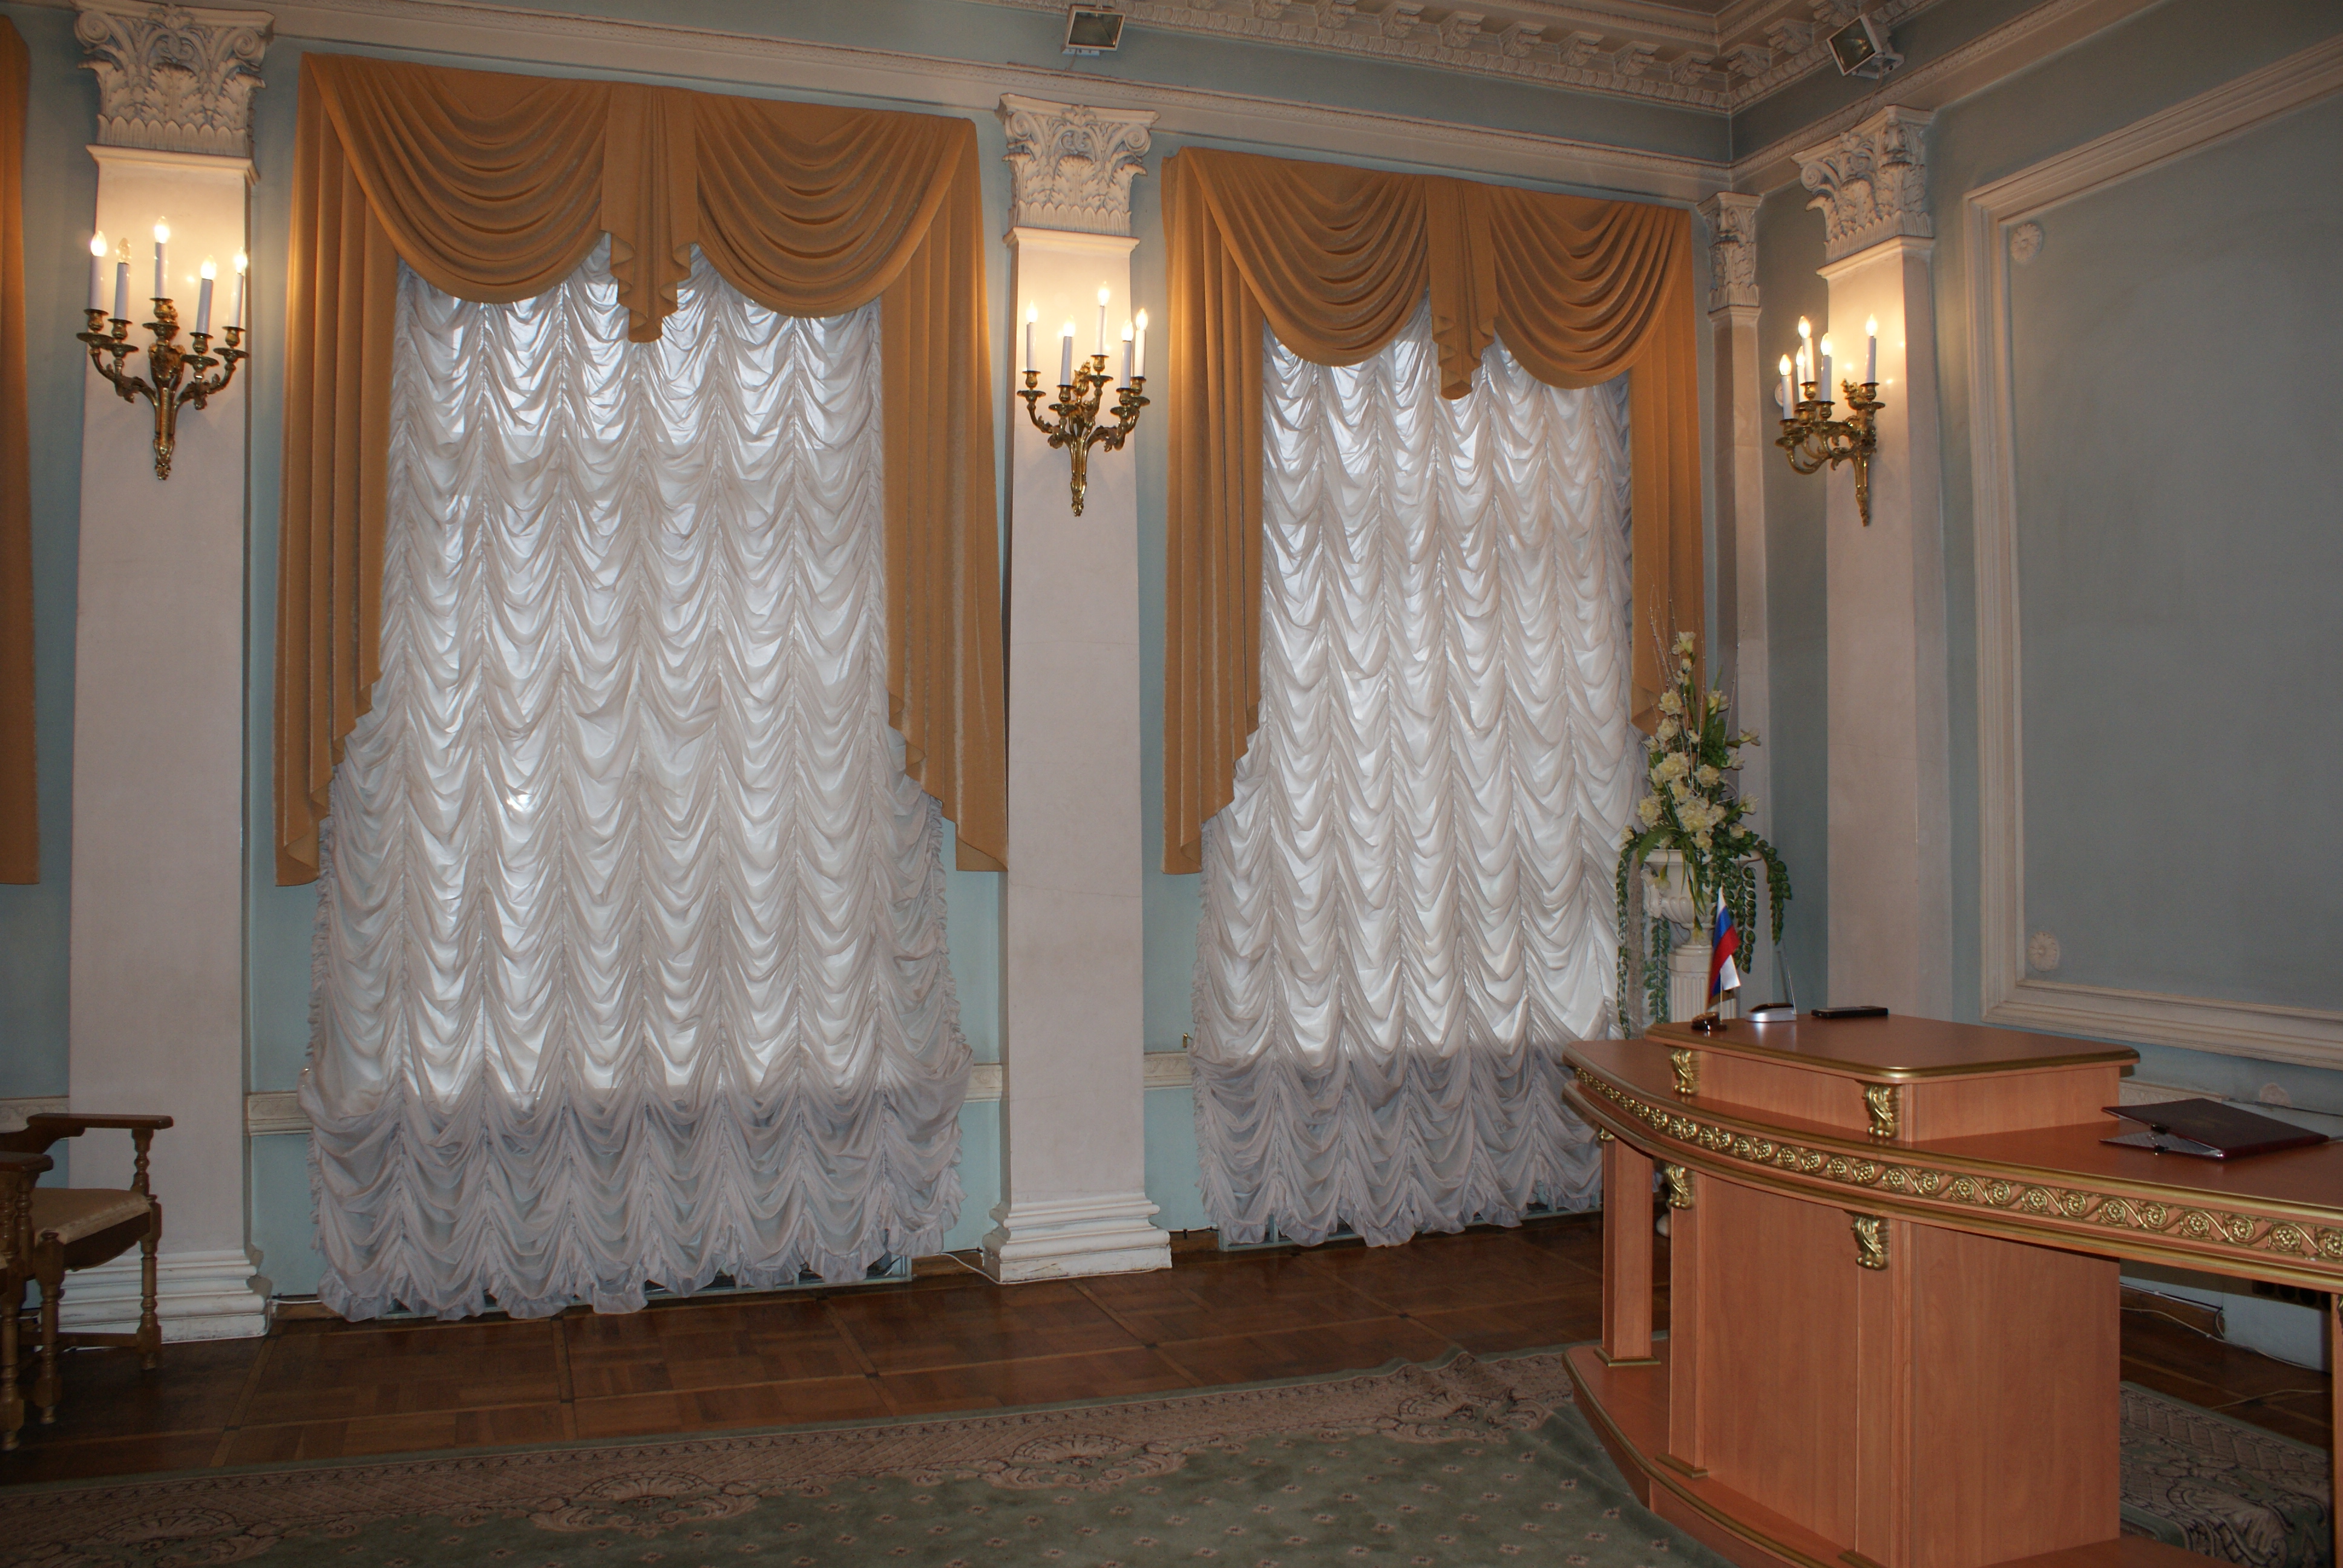 Exemple d'utilisation de rideaux modernes dans un intérieur de pièce lumineuse